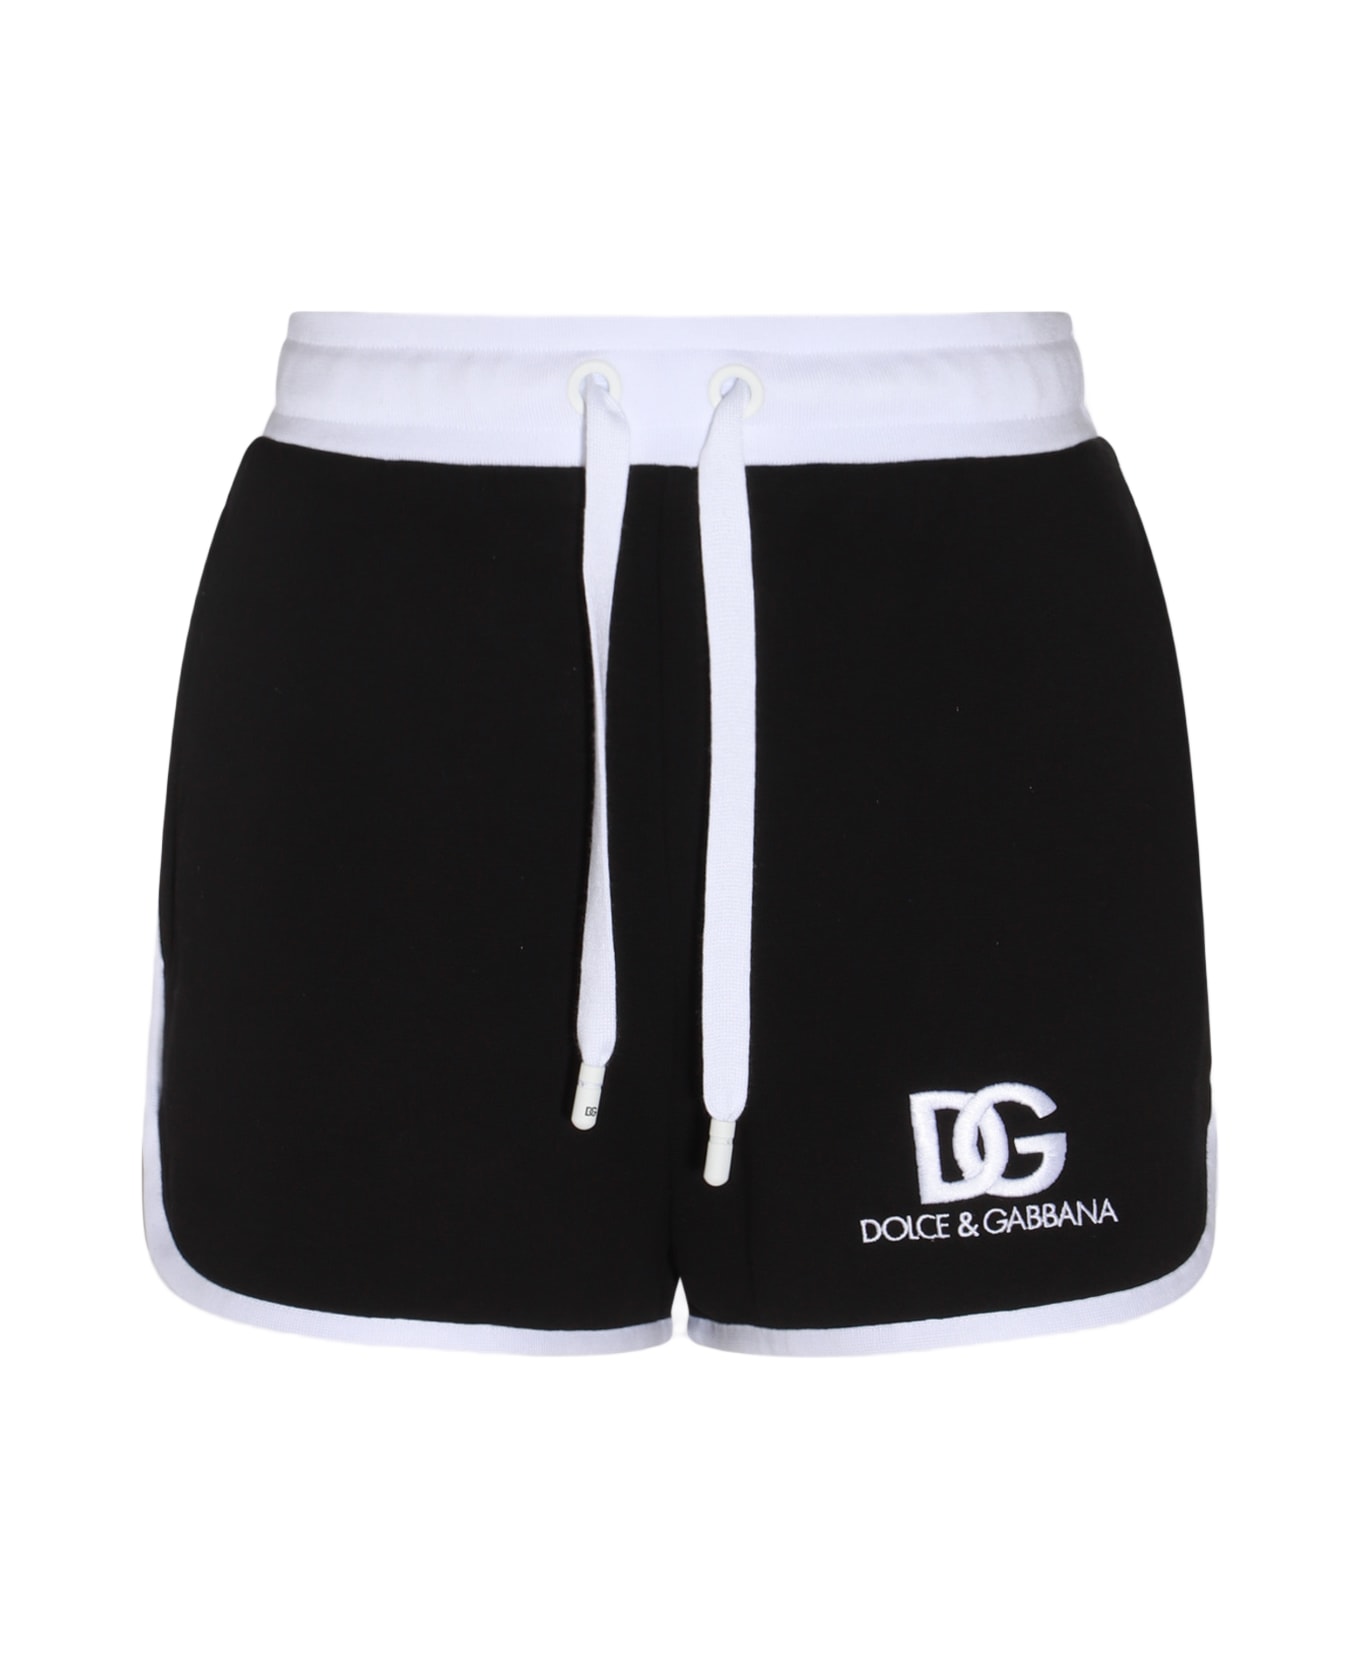 Dolce & Gabbana Black And White Cotton Blend Track Shorts - Nero/bianco ショートパンツ